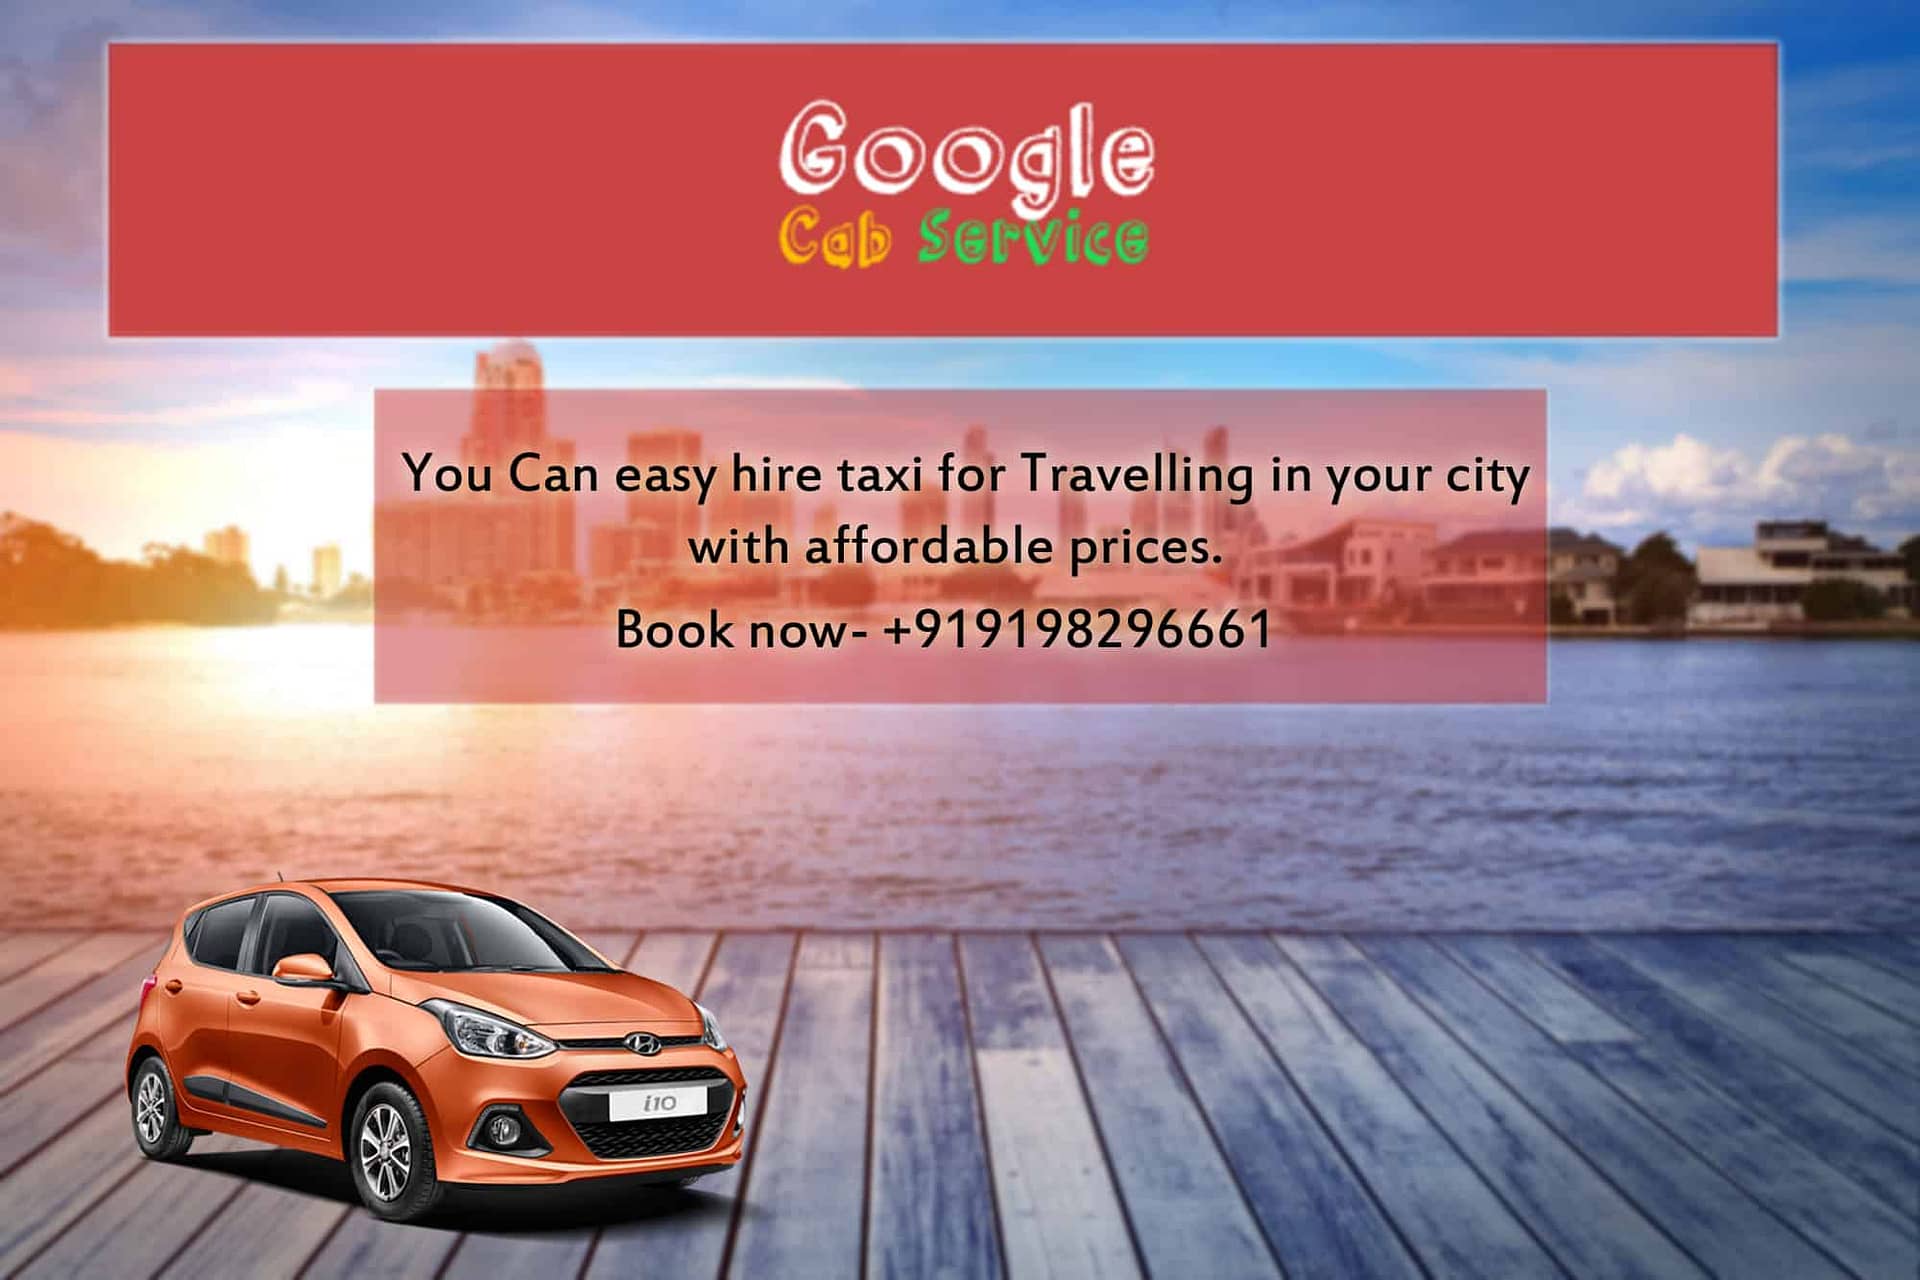 Car Rental in India - Google Cab Service -DesignBump